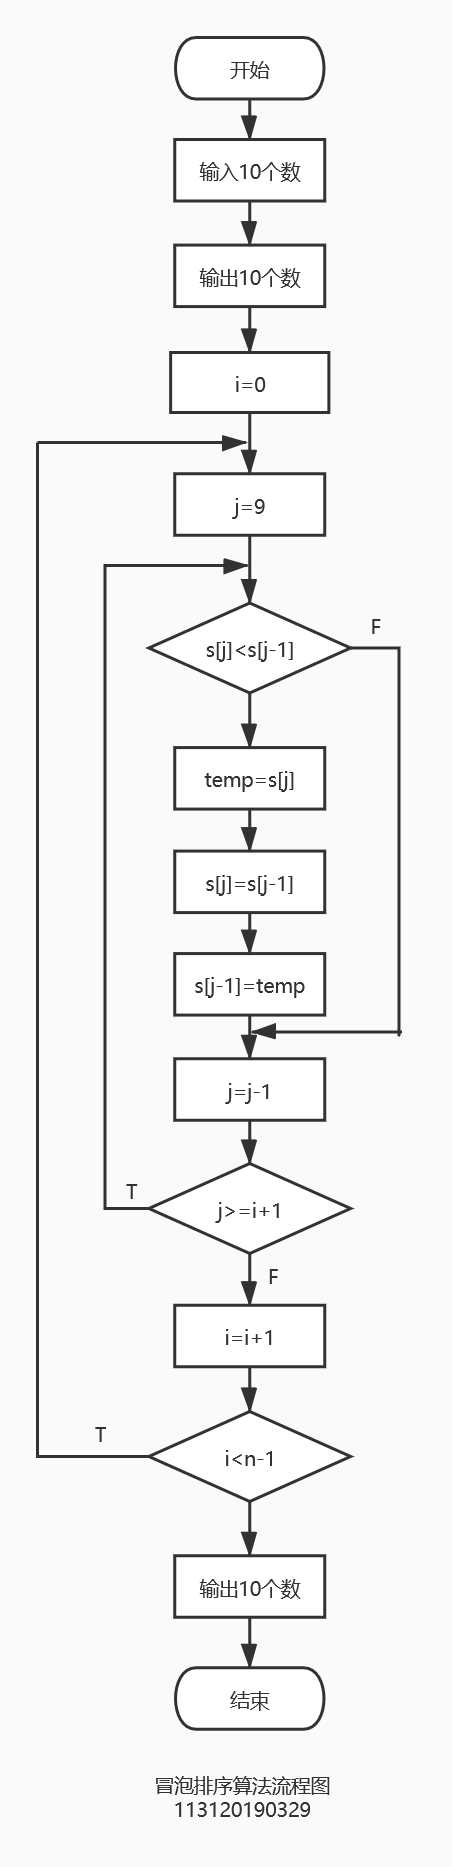 多维数组的基本算法 掌握使用循环依次输出二维数组中的元素 学习冒泡